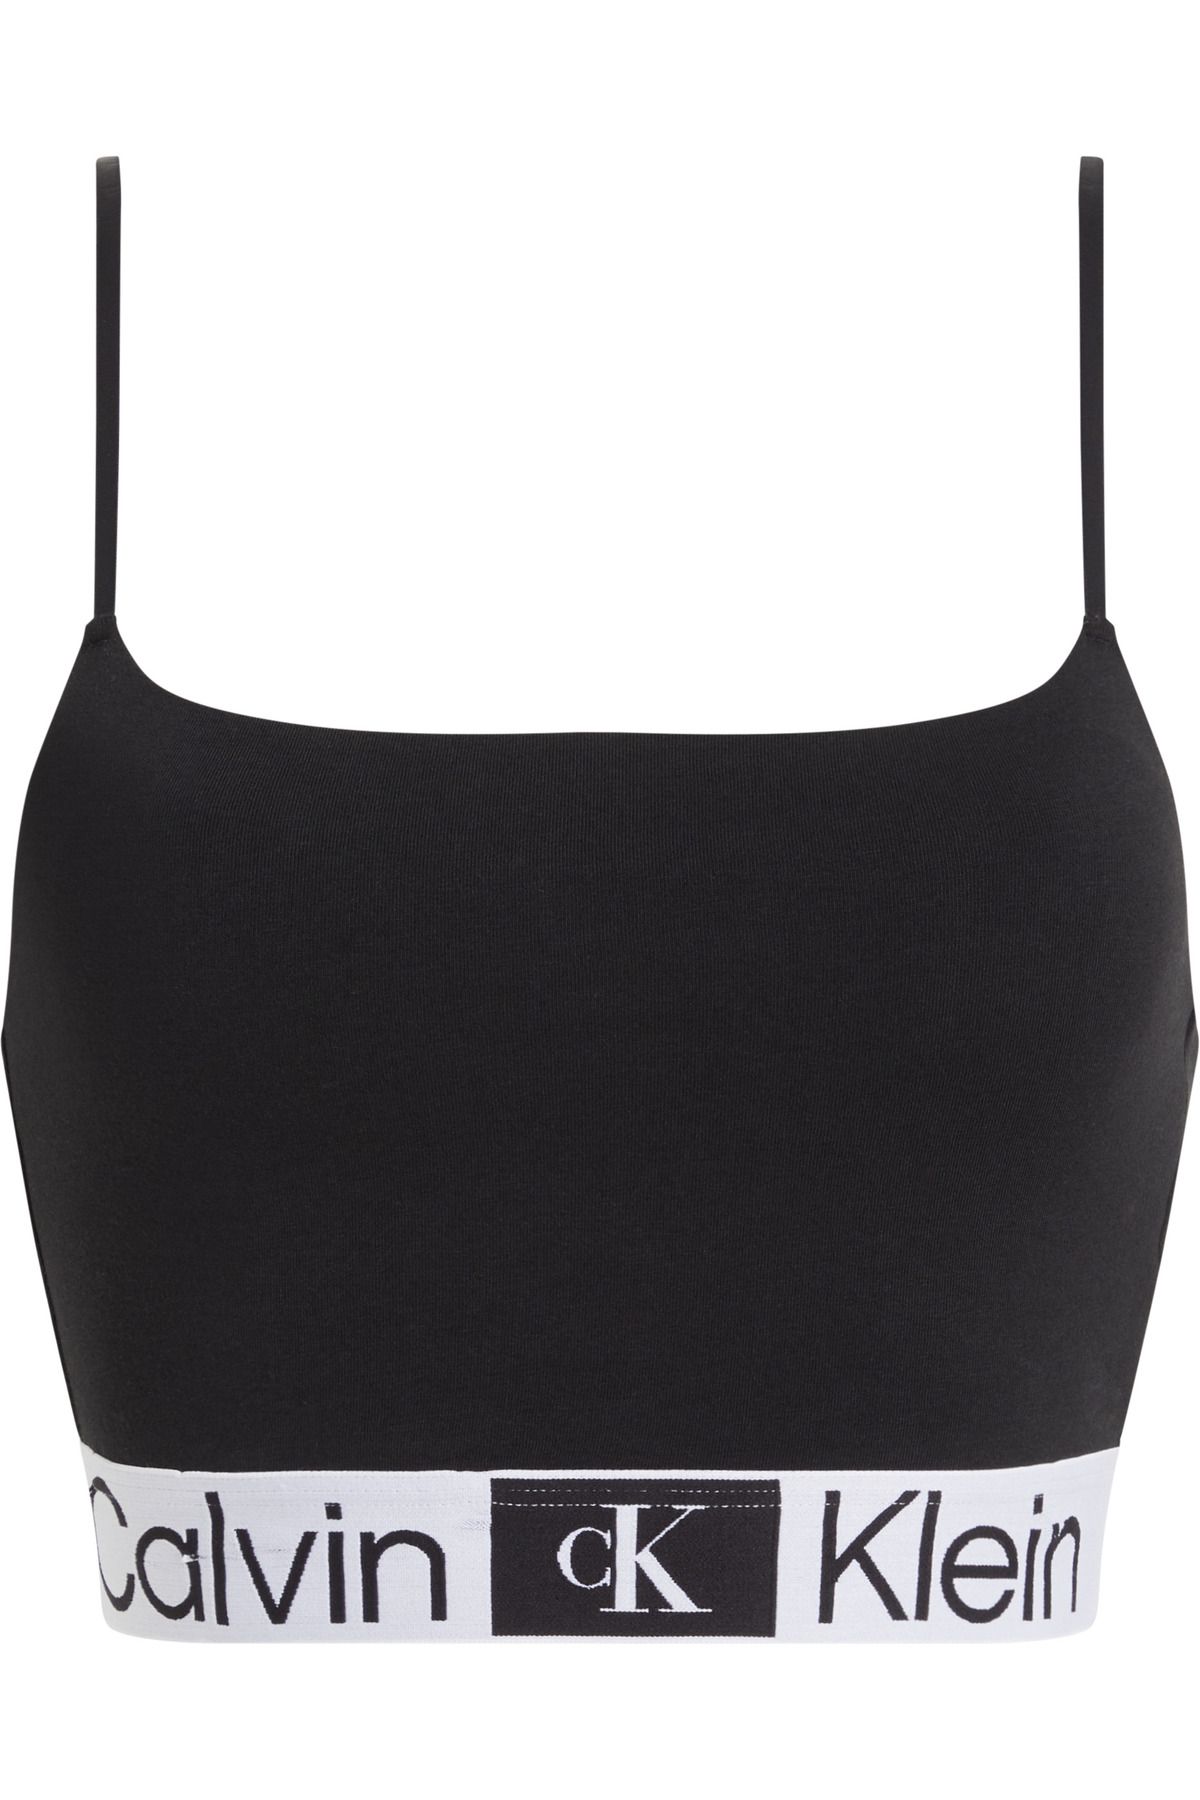 Calvin Klein Kadın Marka Logolu Elastik Bantlı Günlük Kullanıma Uygun Siyah Spor Sütyeni 000QF7587E-UB1